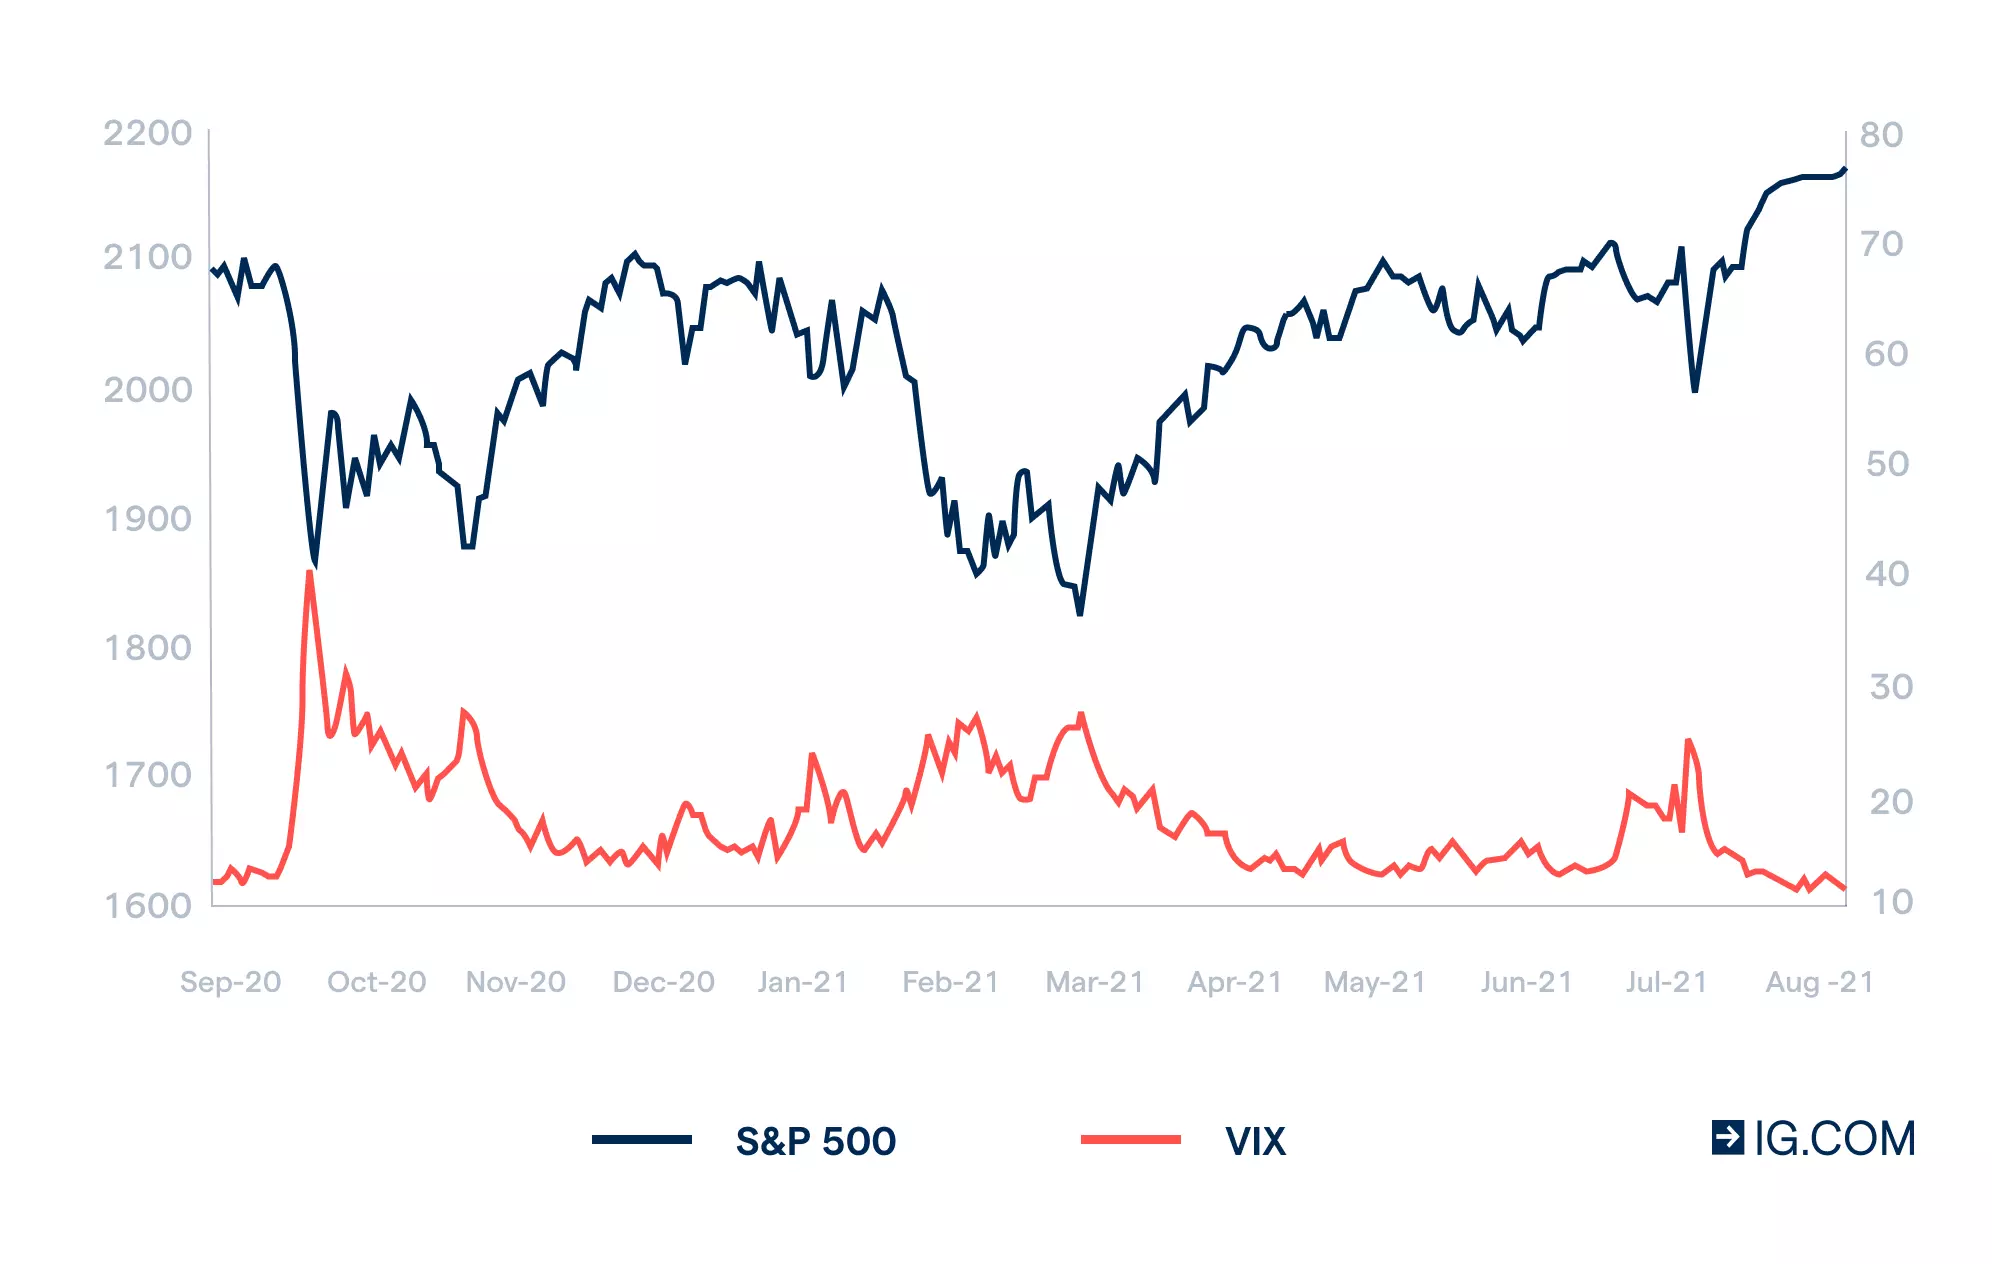 VIX vs S&P 500 chart